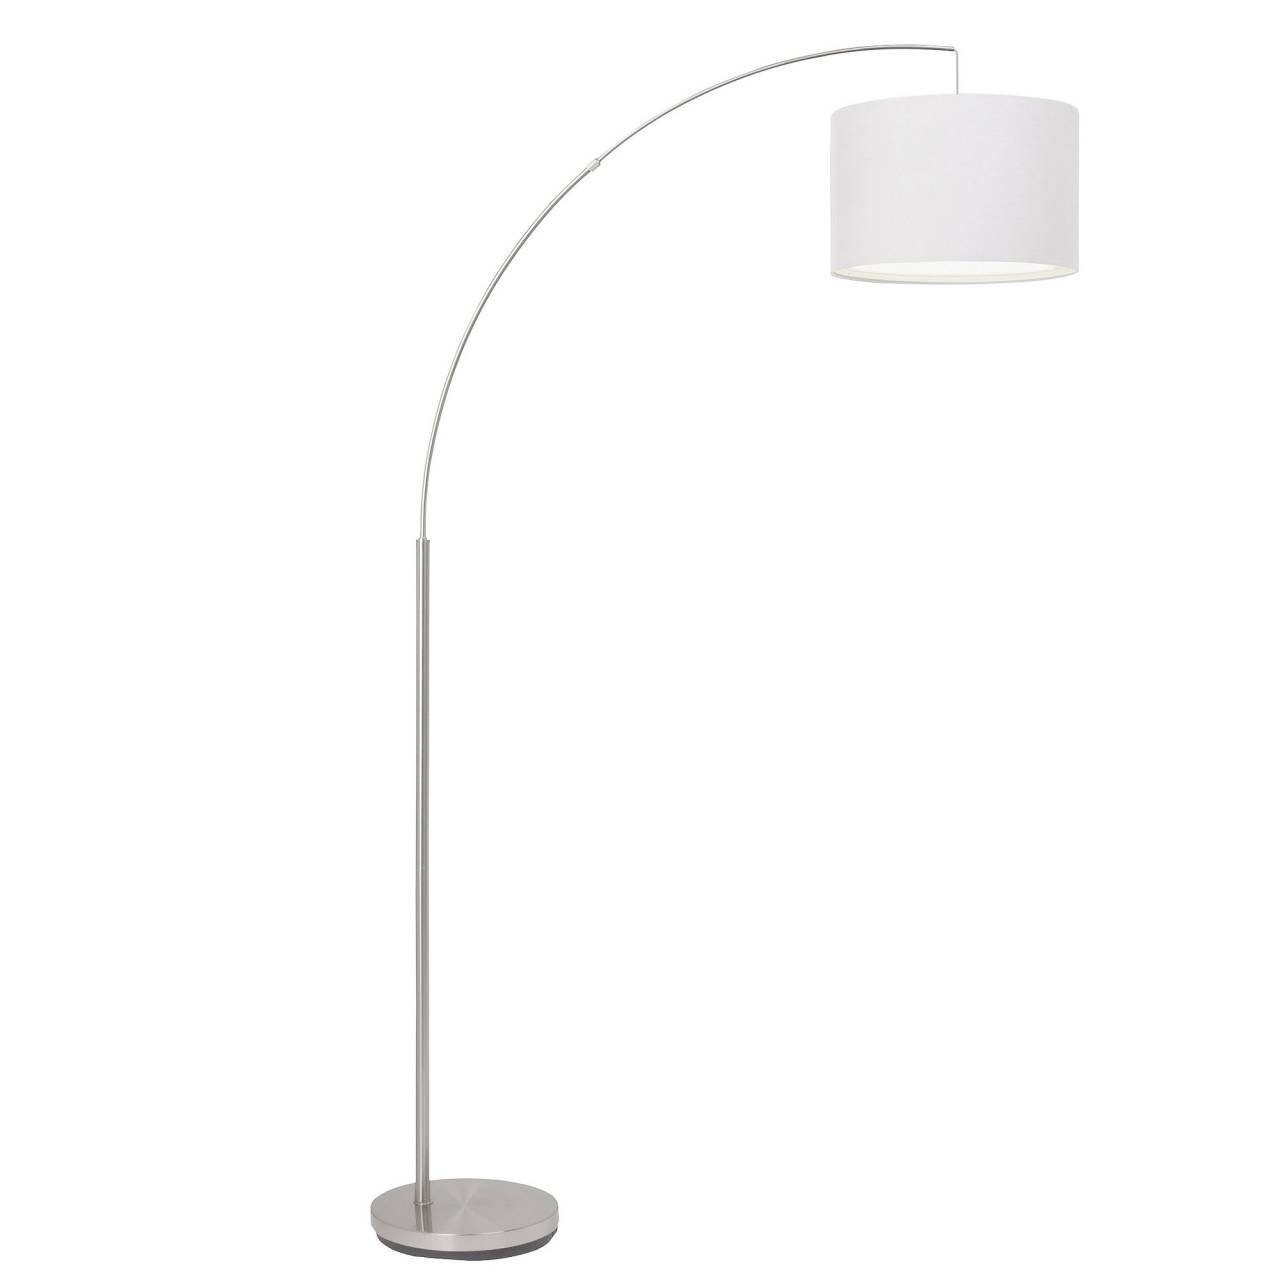 Brilliant Stehlampe Clarie, Lampe Clarie Bogenstandleuchte 1,8m eisen/weiß 1x A60, E27, 60W, gee